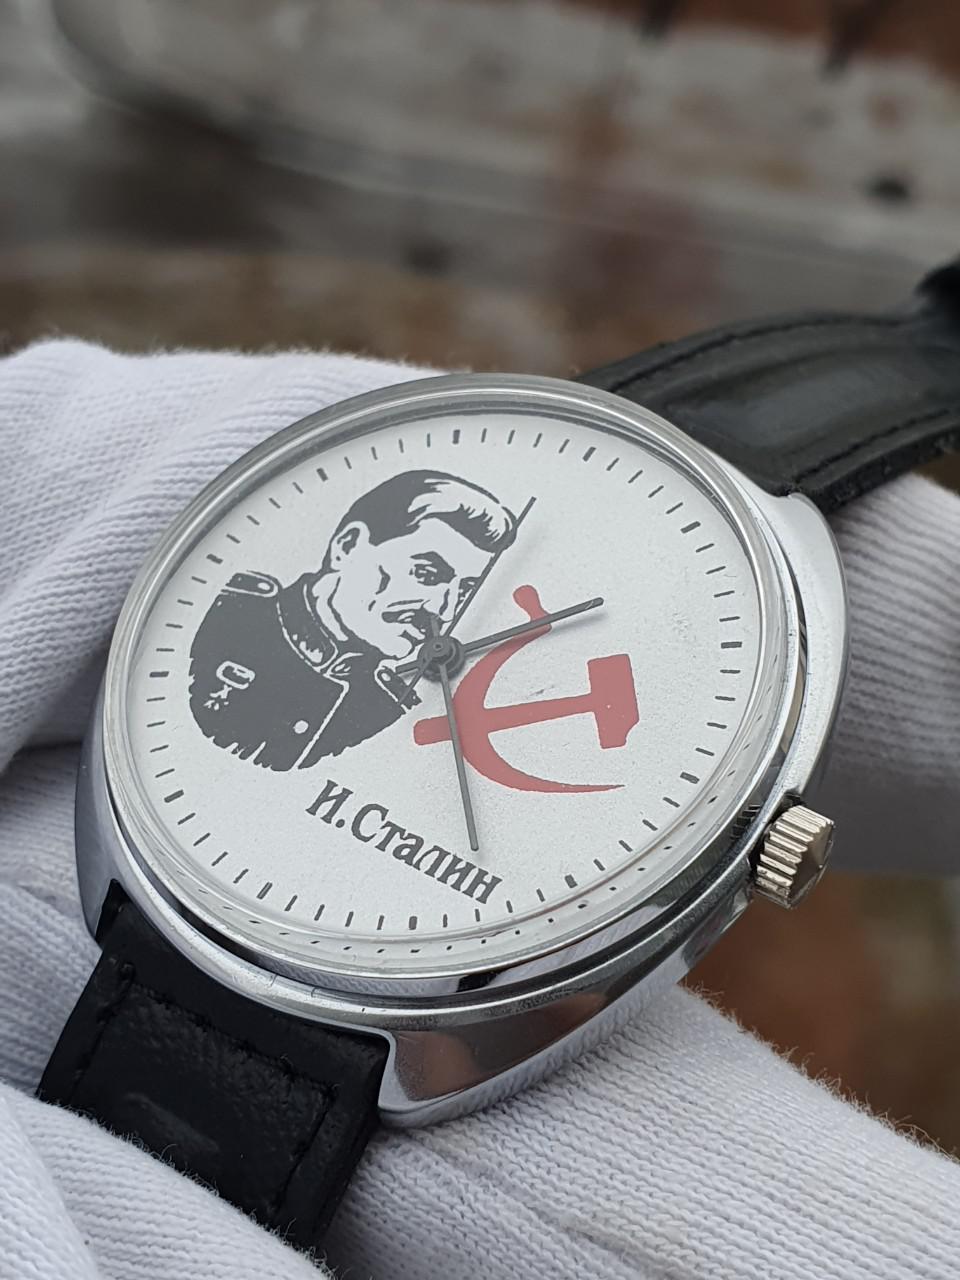 Đồng hồ DHCRAKETA17/11/20-15 Stalin